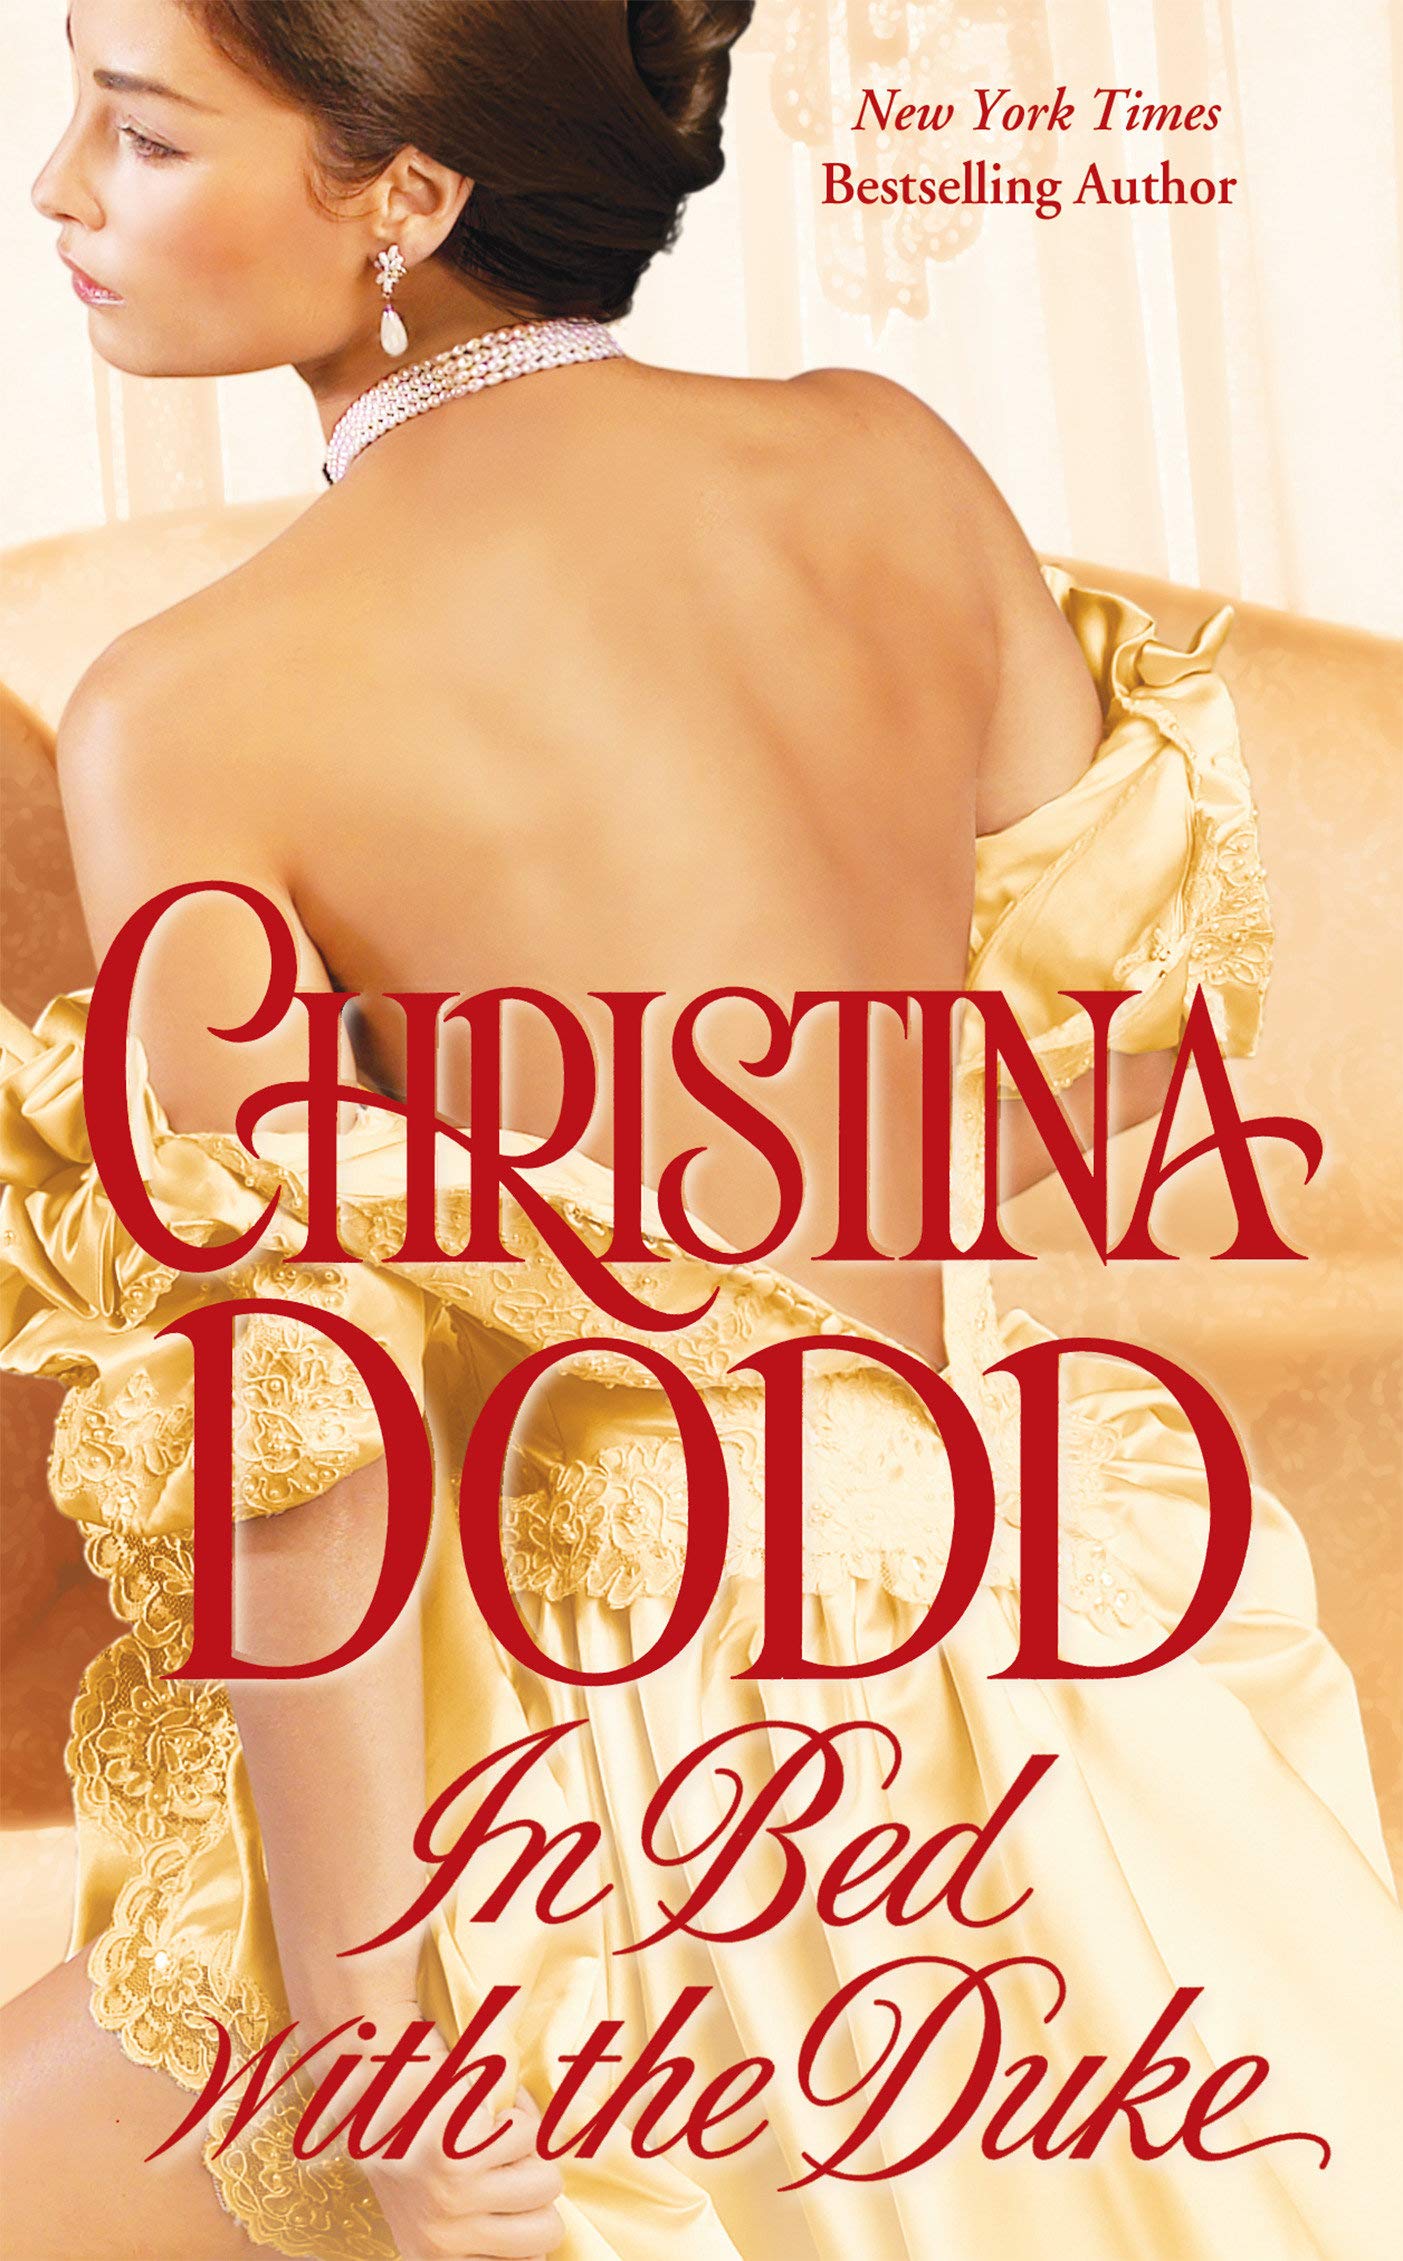 Historical Christina Dodd